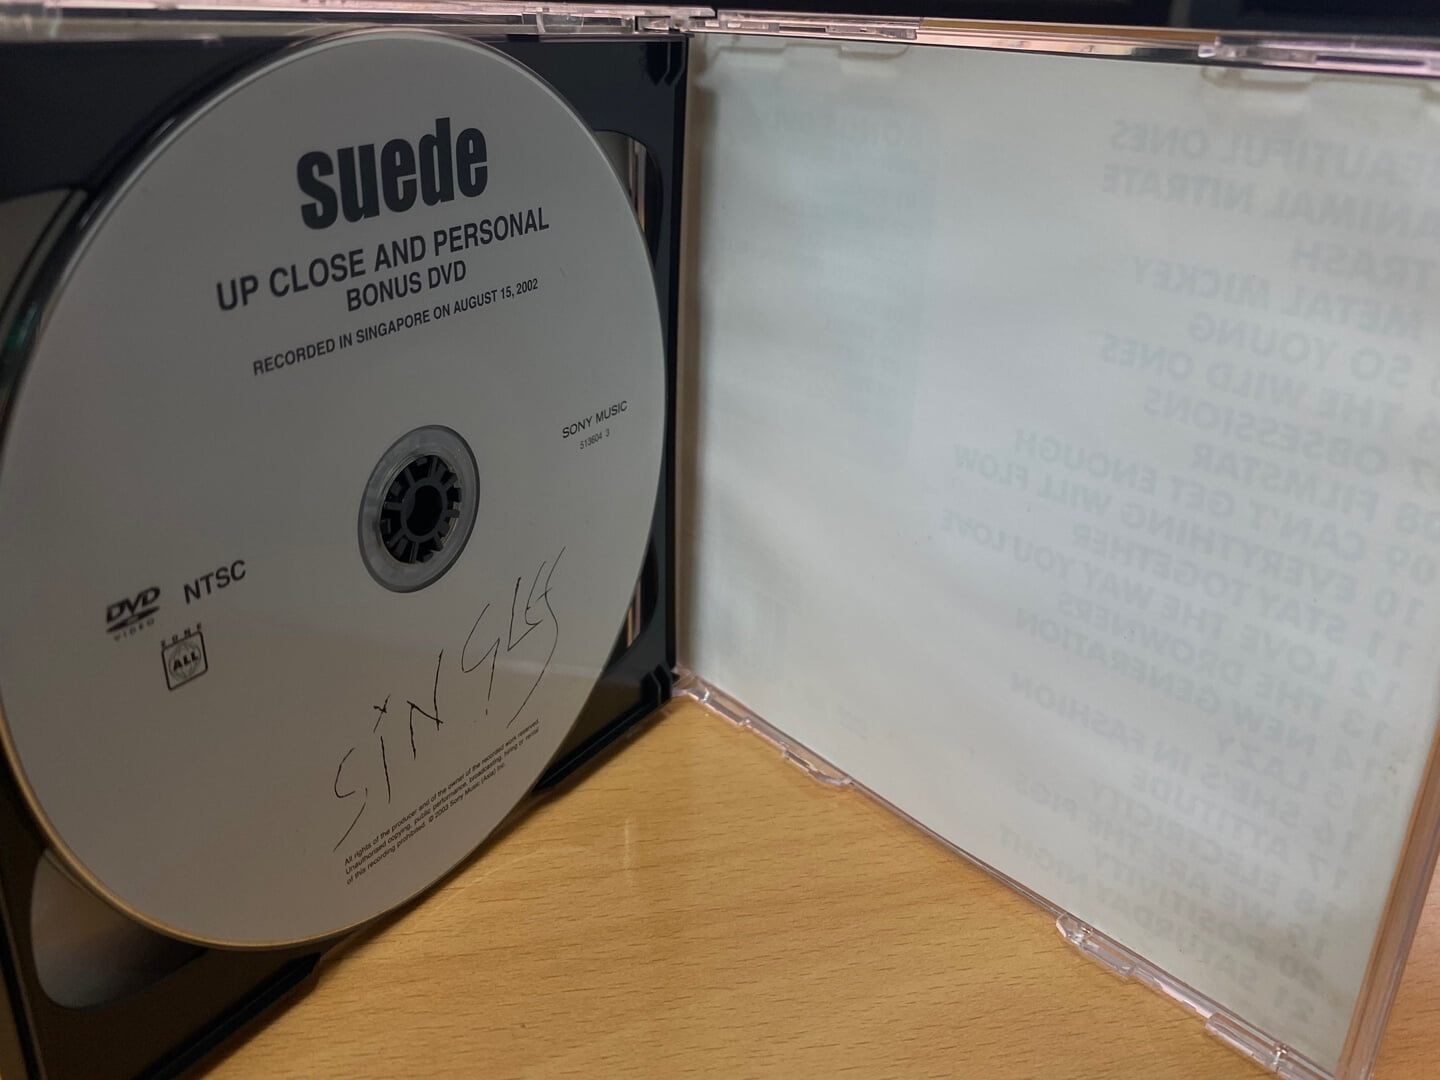 스웨이드 - Suede - Singles 2Cds [1CD+1DVD]